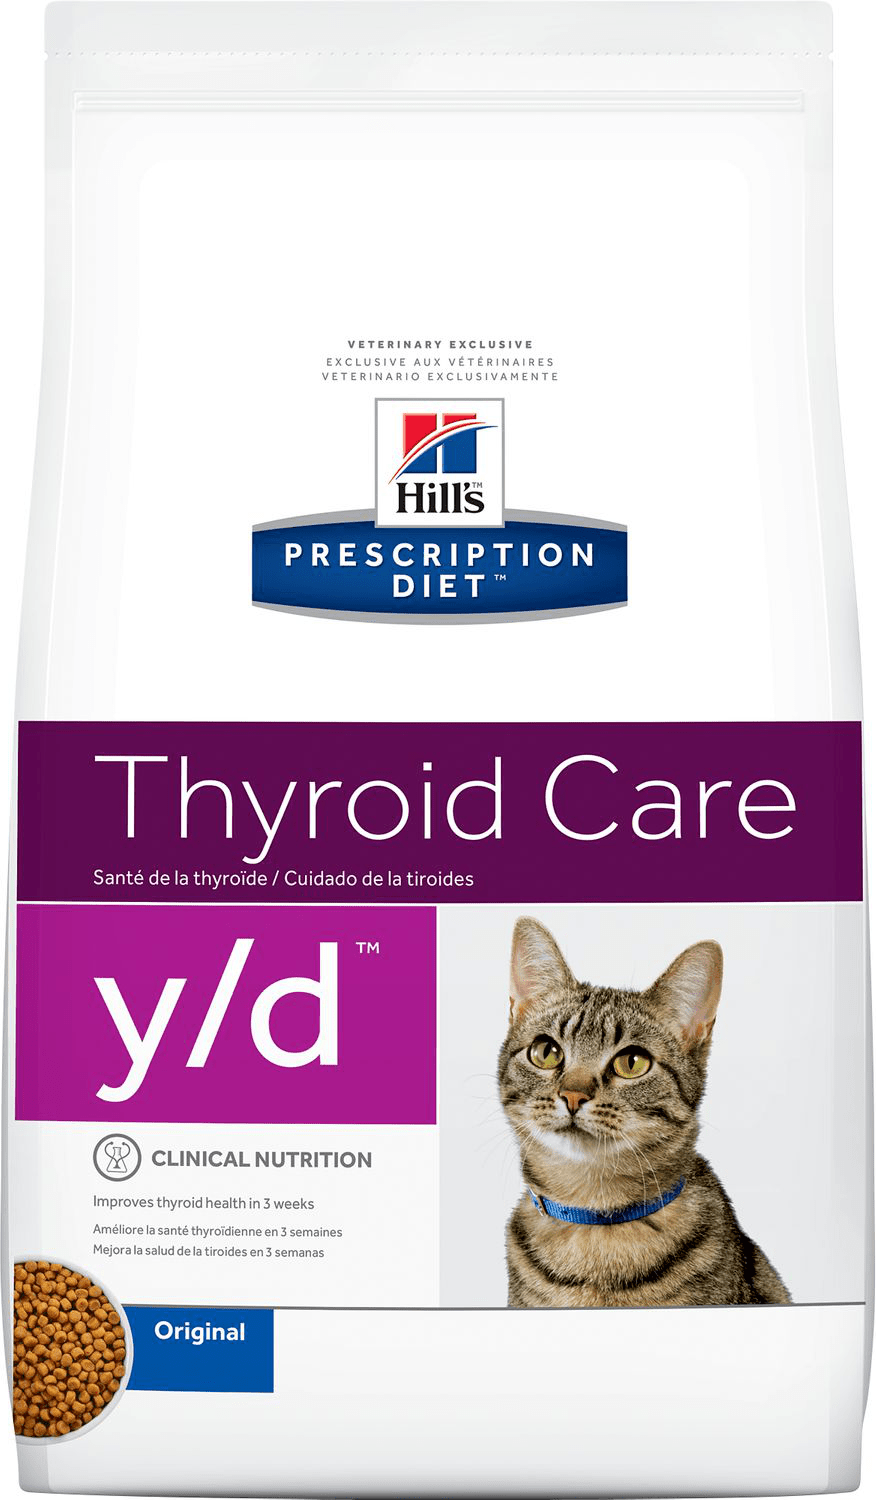 Hill's Prescription Diet Y-d Original (Dry)